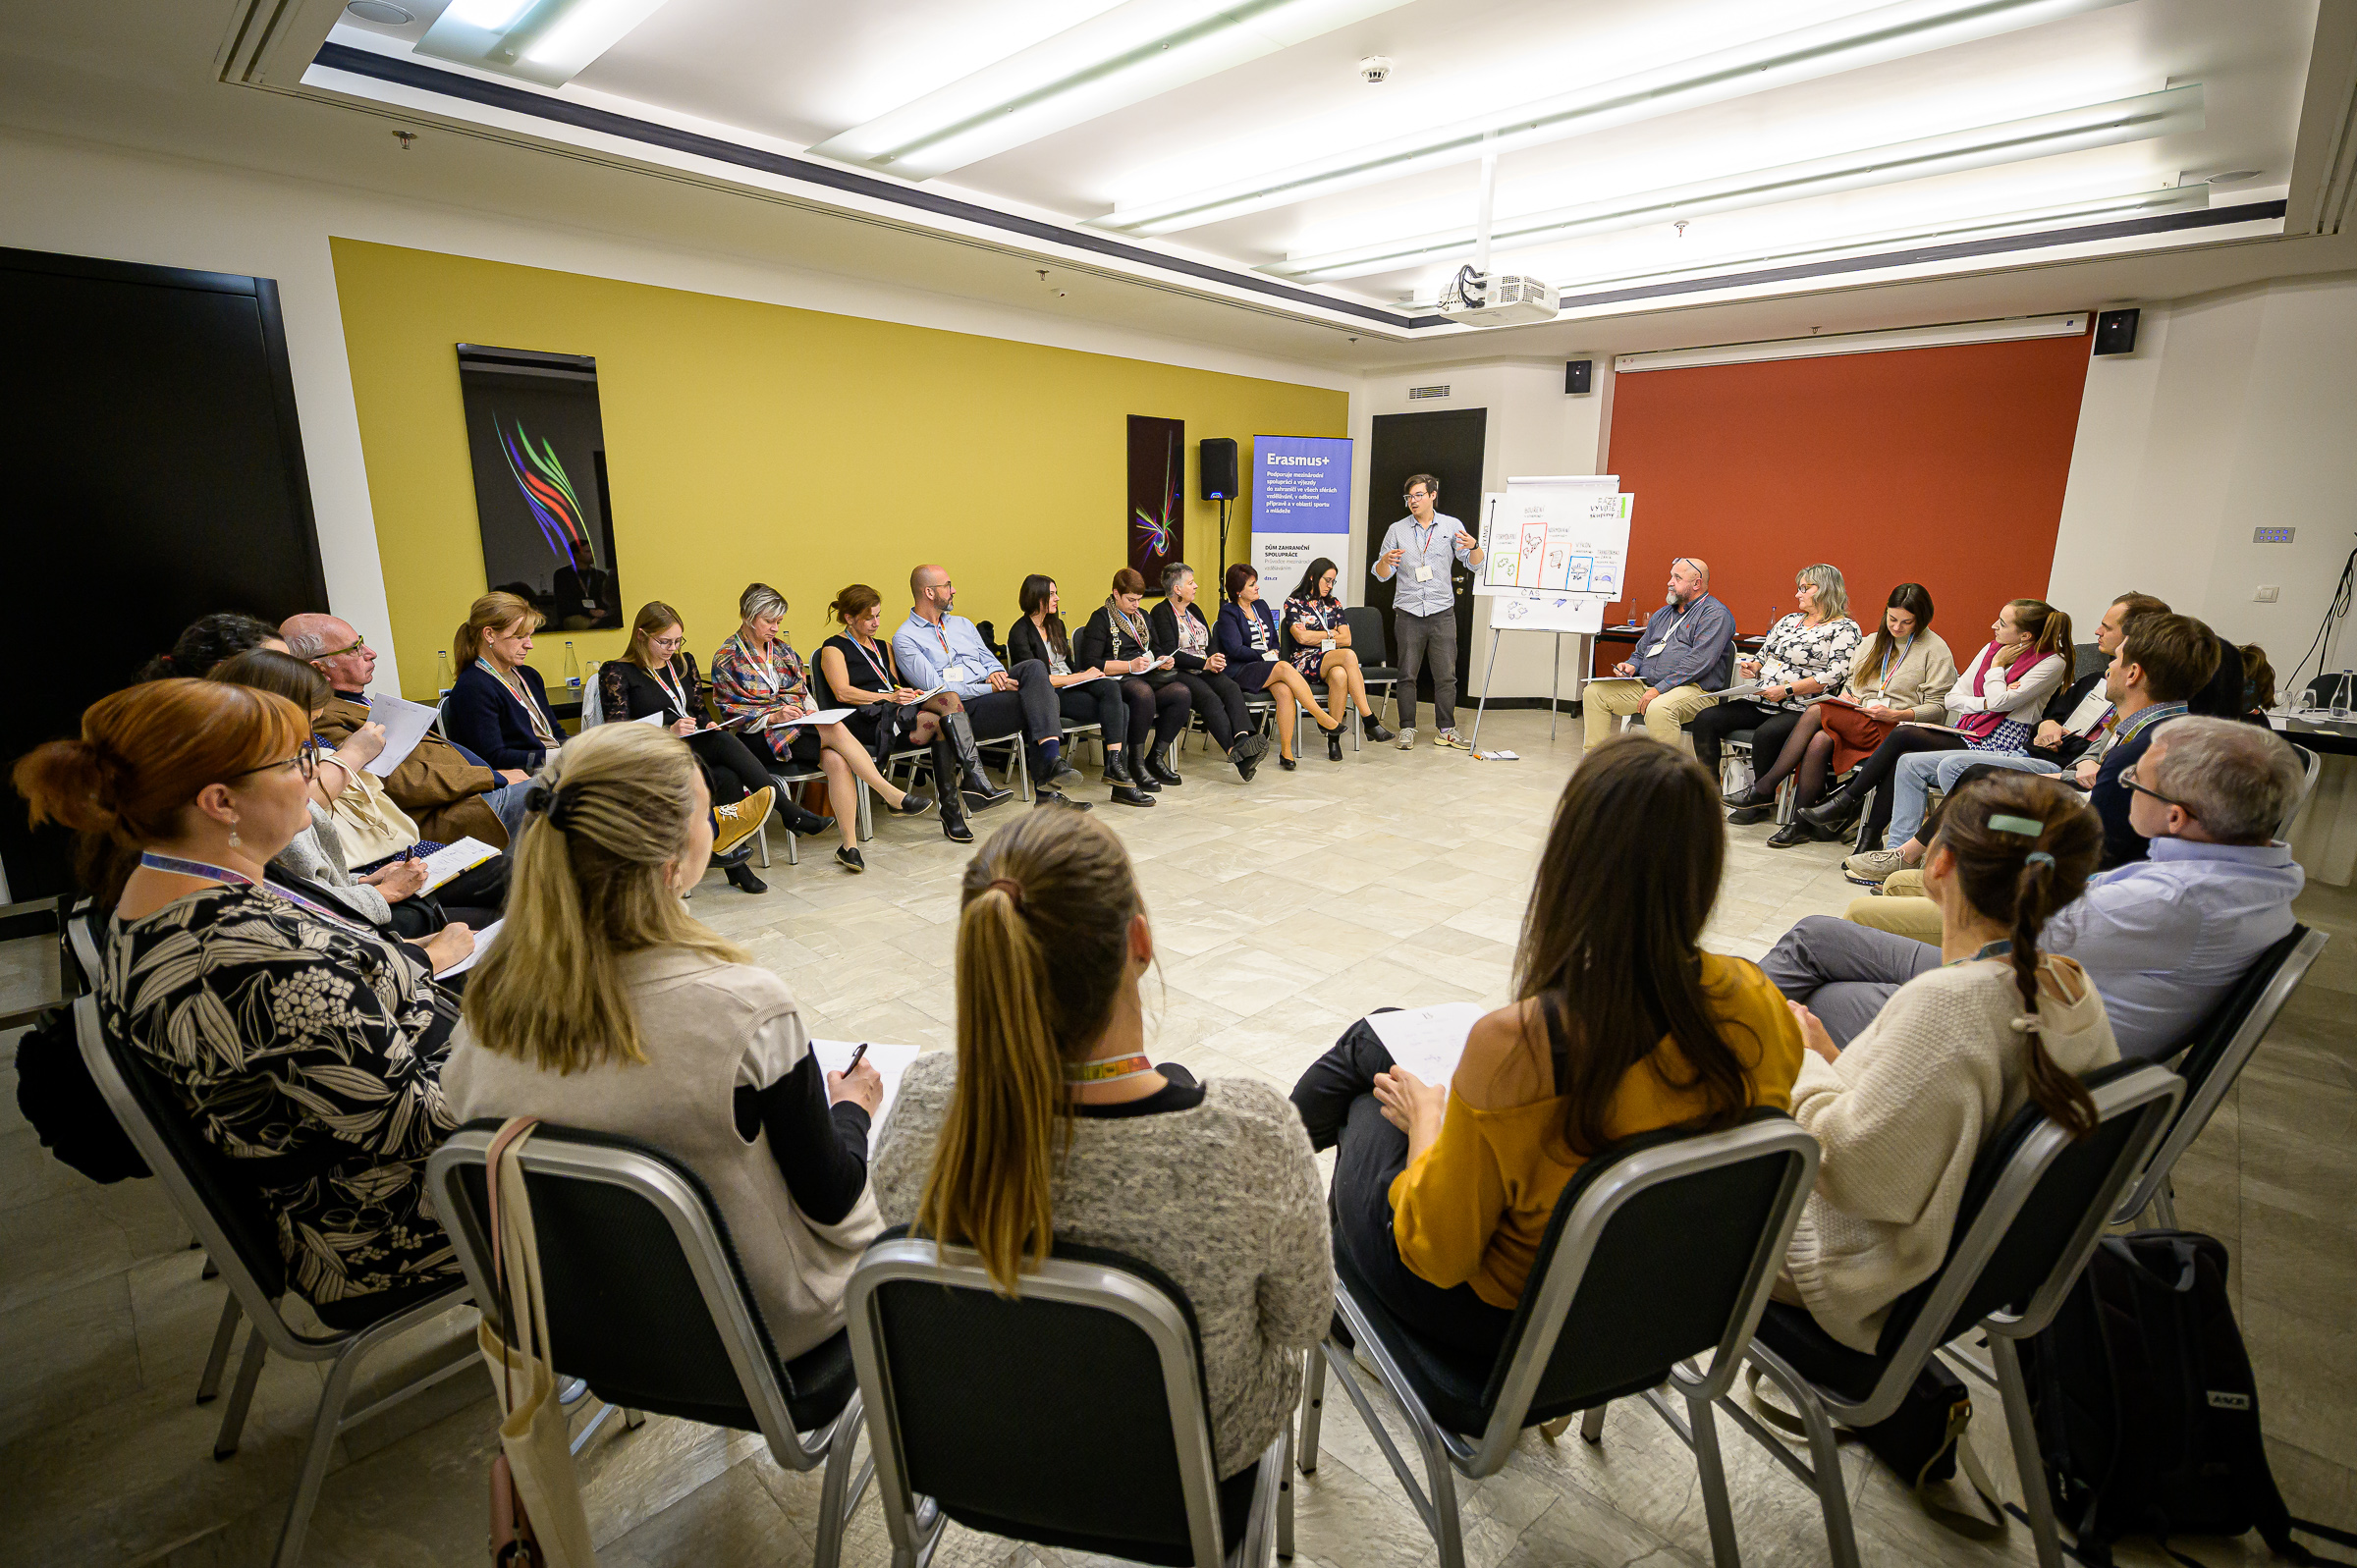 Workshop Filipa Gábora přitáhl zájemce vědět více o tom, jak pracovat se skupinou. Foto: Petr Zewlakk Vrabec